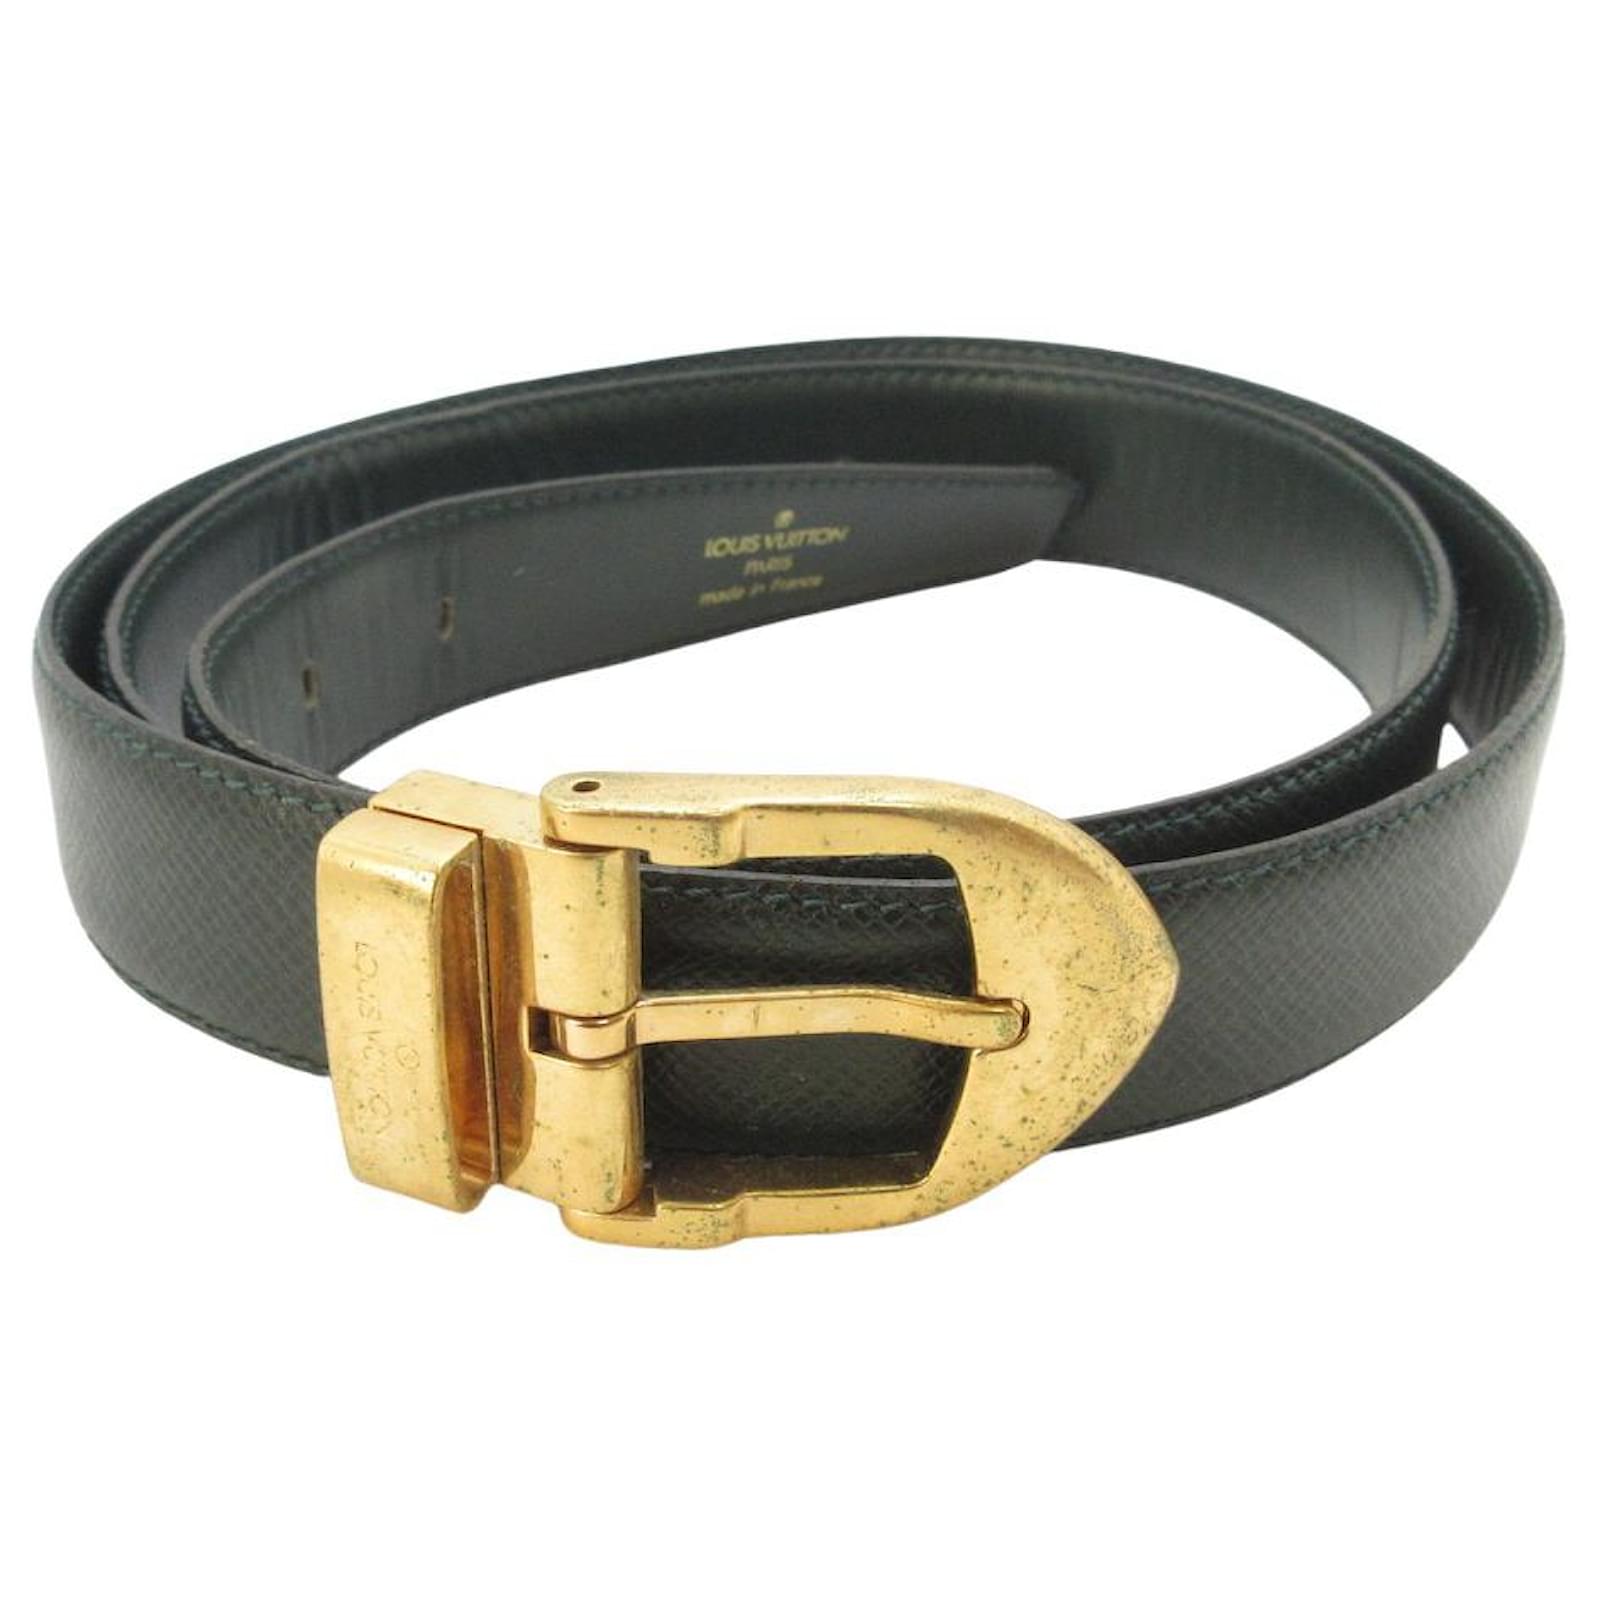 Louis Vuitton Black Epi Leather Buckle Belt 100CM Louis Vuitton